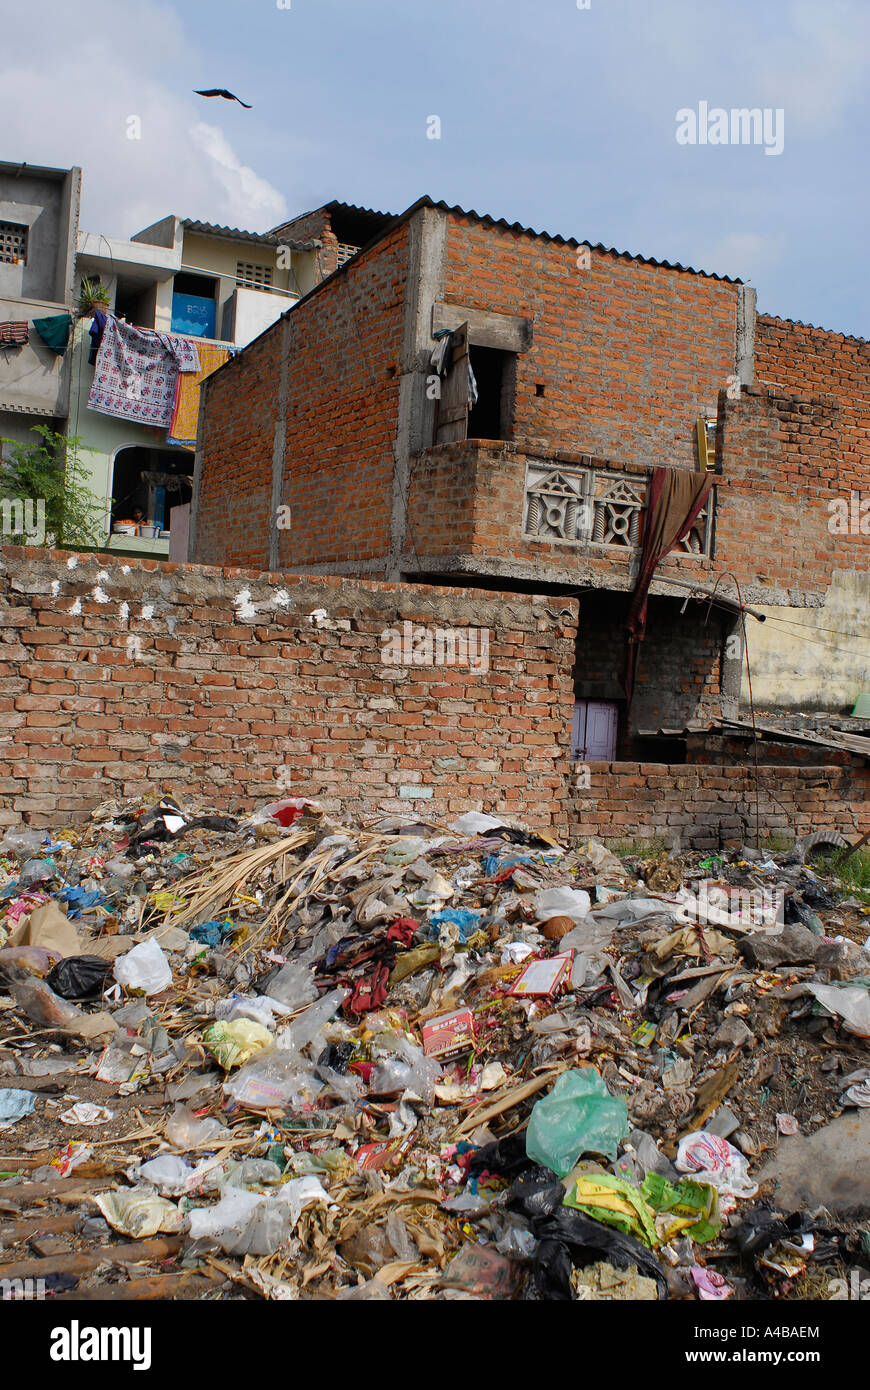 Stock Bild von einem Slum in Chennai und der Müll, der um ihn herum geworfen ist Stockfoto